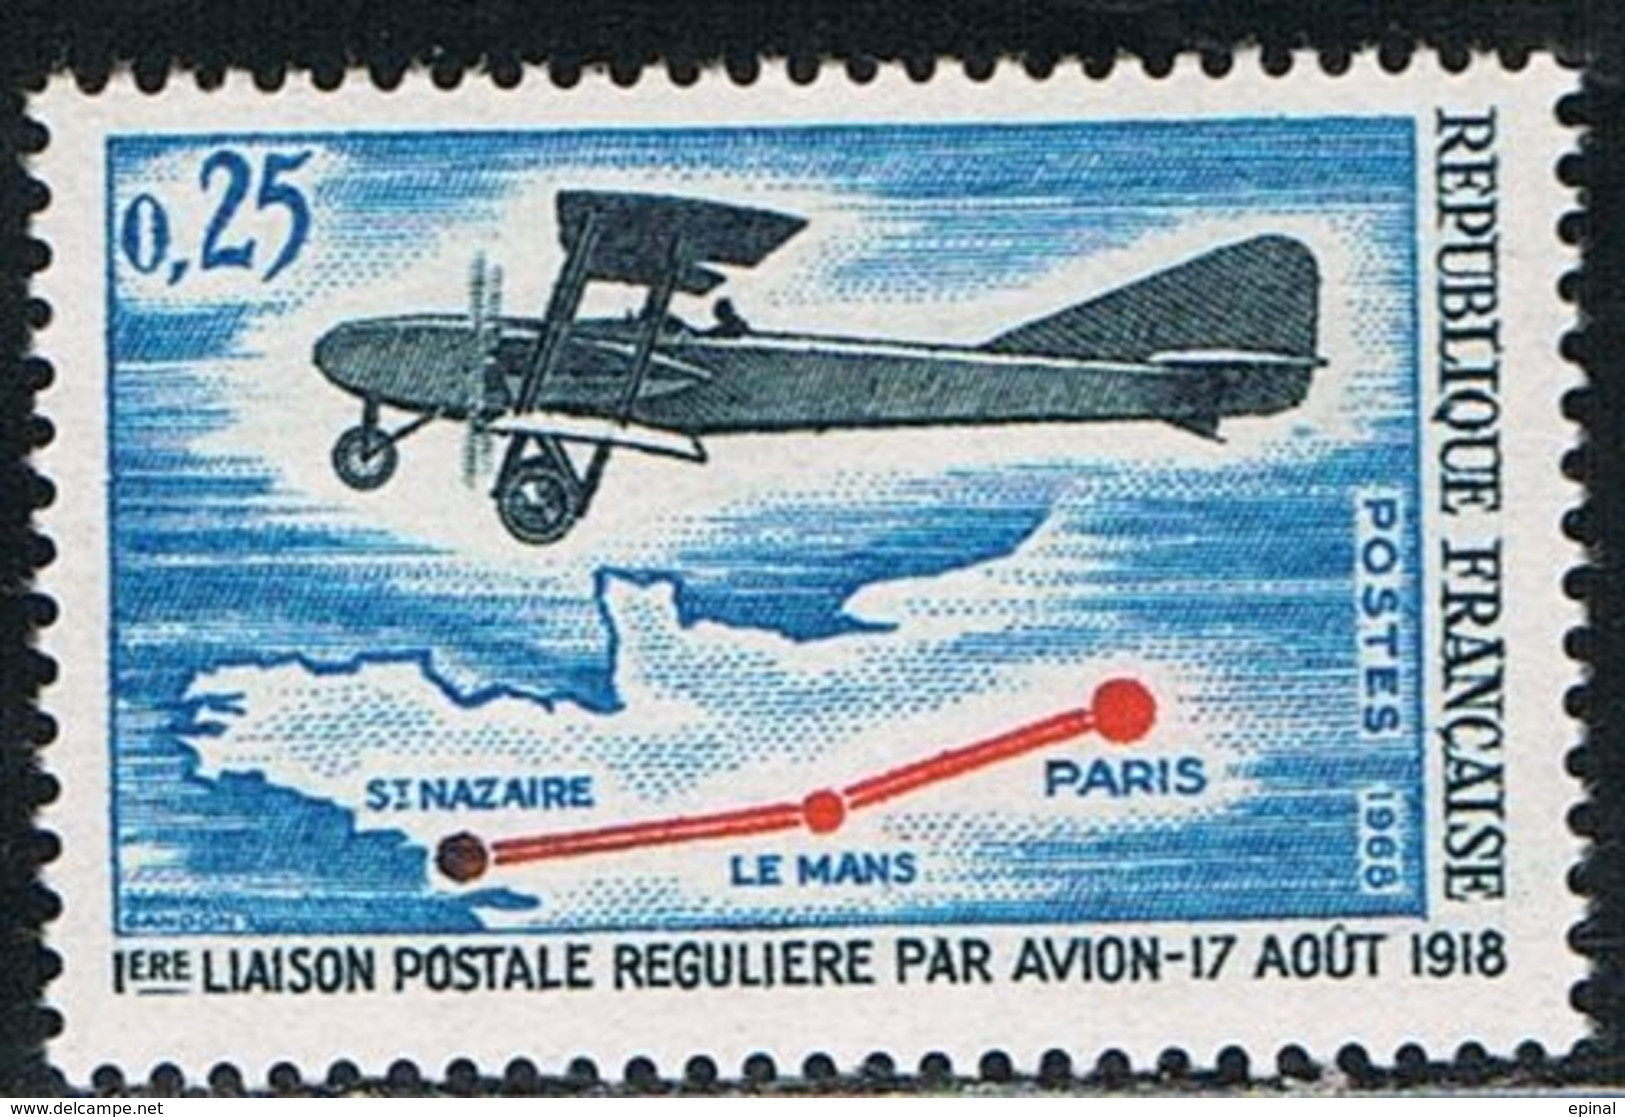 FRANCE : N° 1565 ** (1ère Liaison Postale Régulière Par Avion) - PRIX FIXE - - Unused Stamps